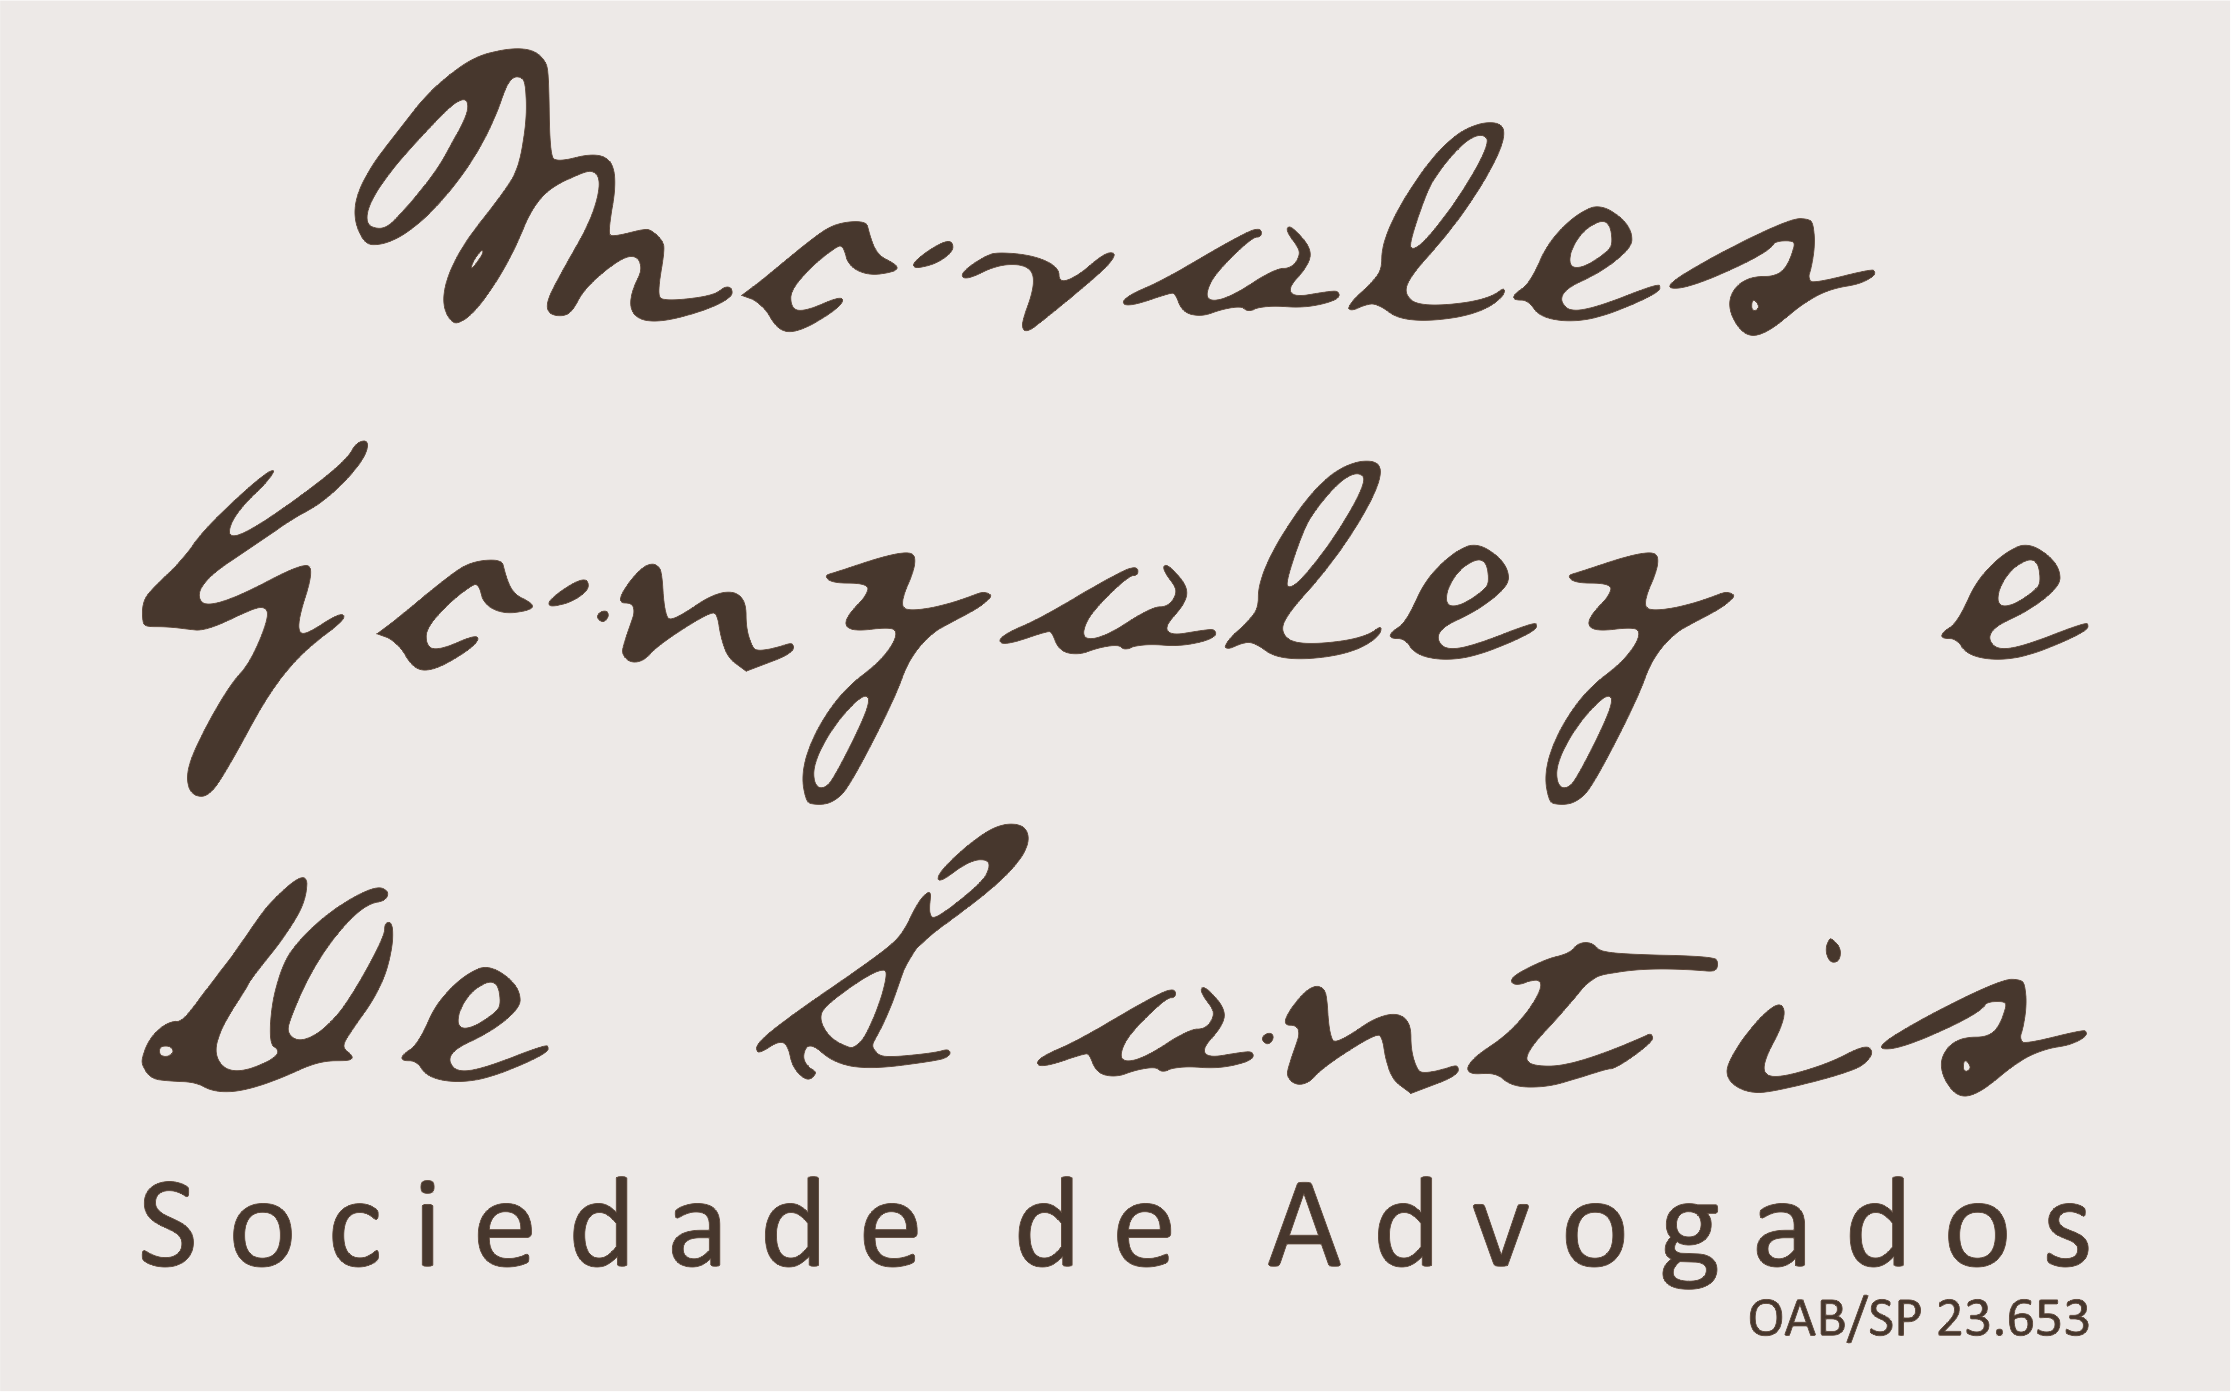 Morales, Gonzalez e De Santis Sociedade de Advogados